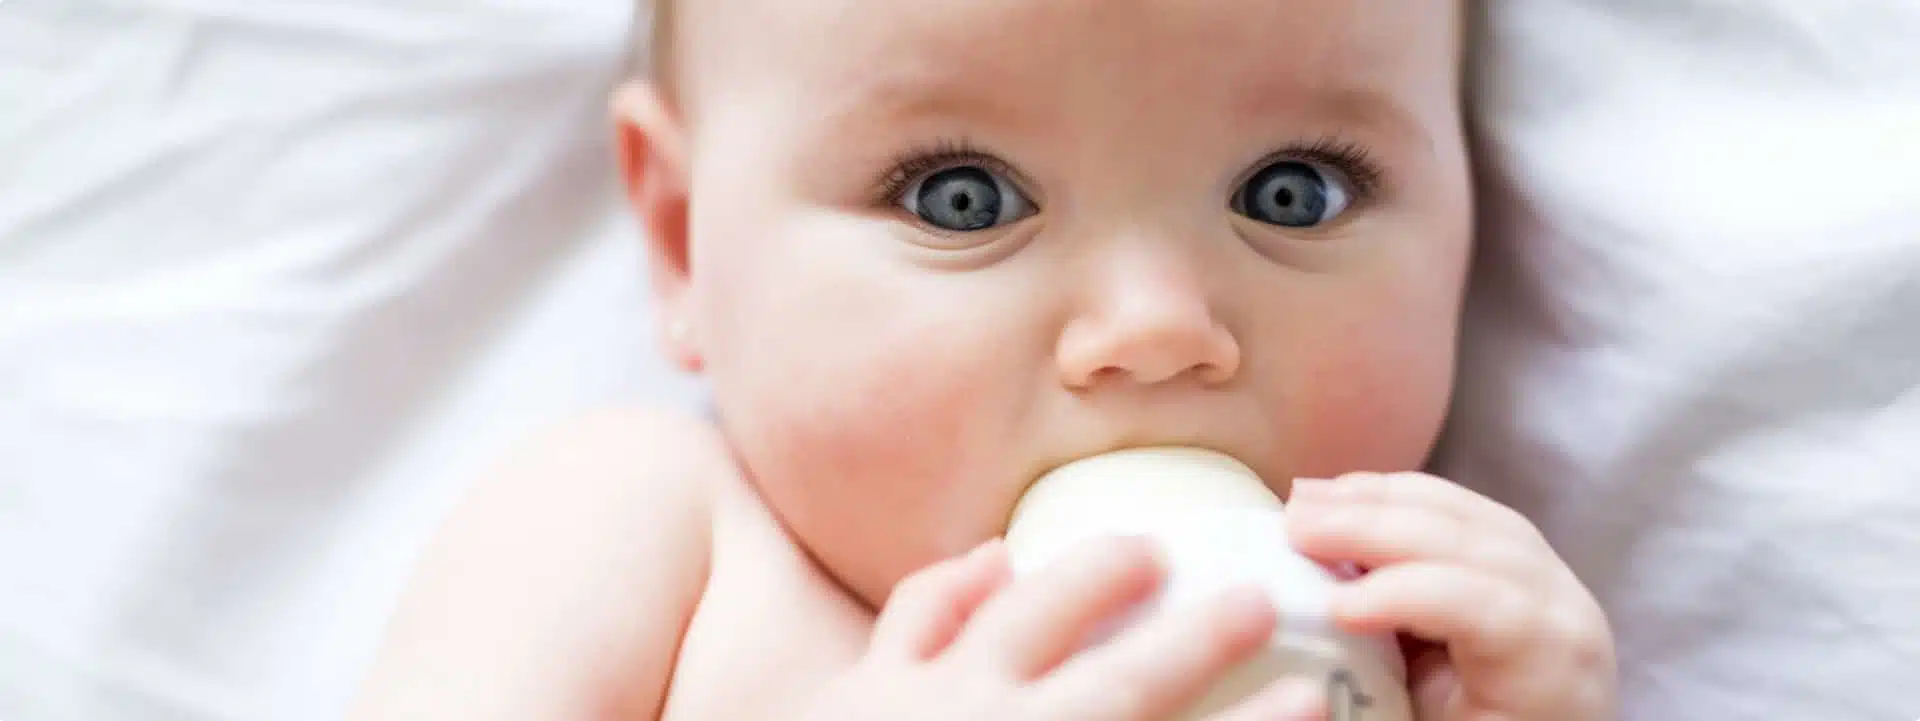 תינוק שותה חלב מבקבוק